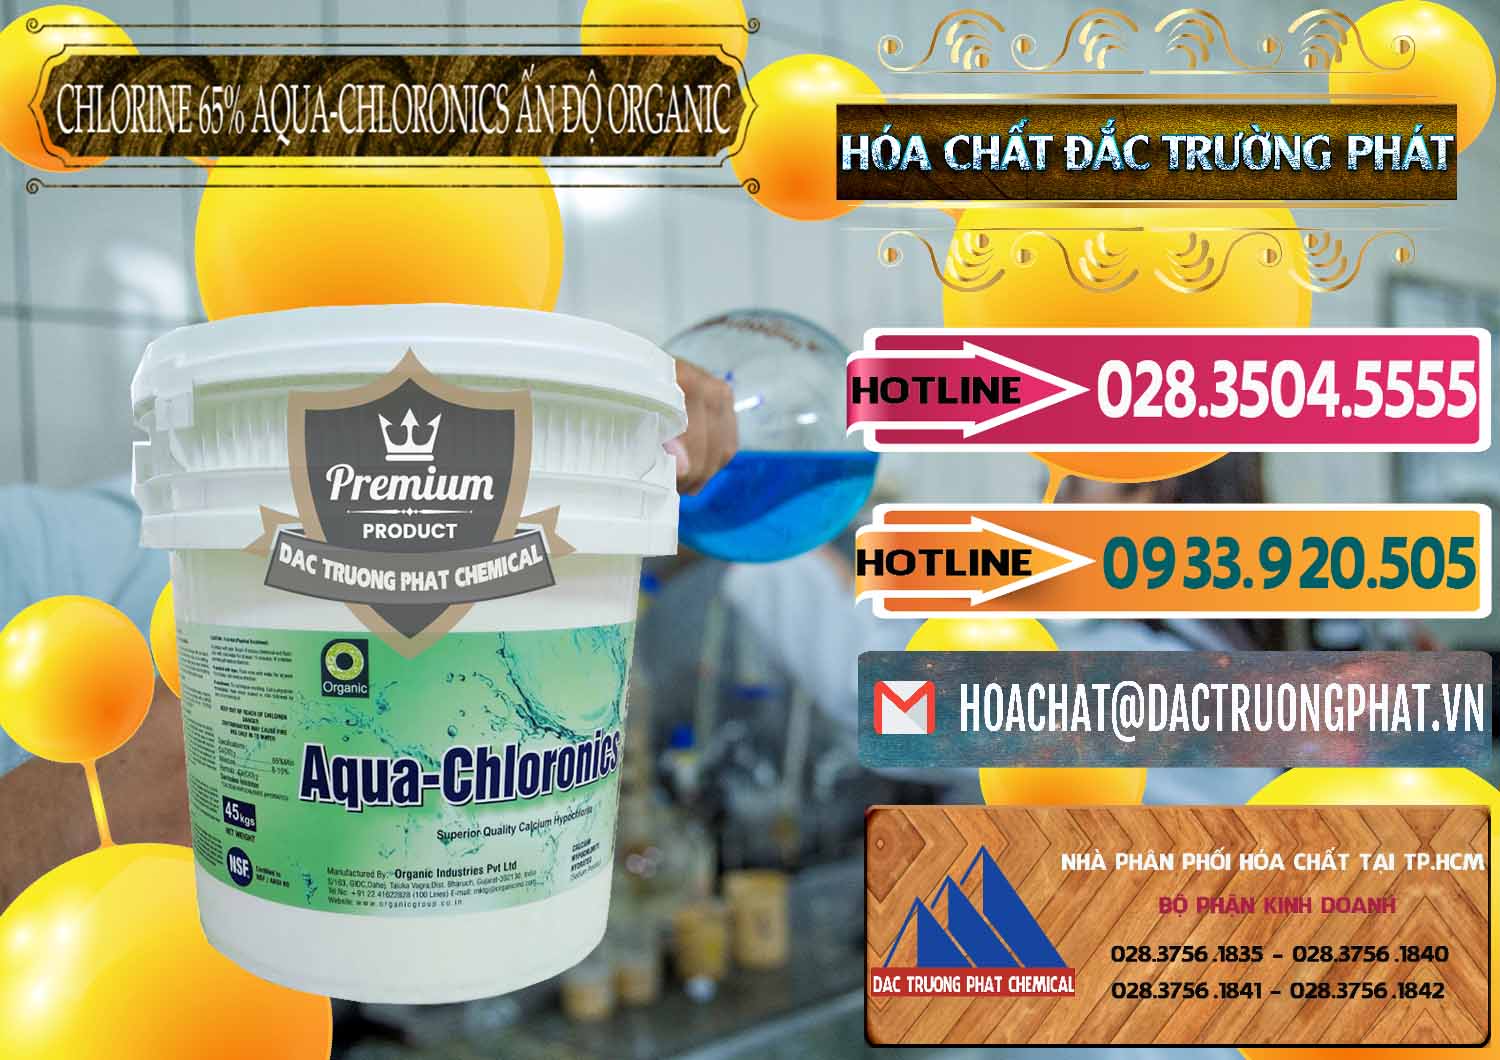 Công ty cung cấp - bán Chlorine – Clorin 65% Aqua-Chloronics Ấn Độ Organic India - 0210 - Cty phân phối ( cung ứng ) hóa chất tại TP.HCM - dactruongphat.vn